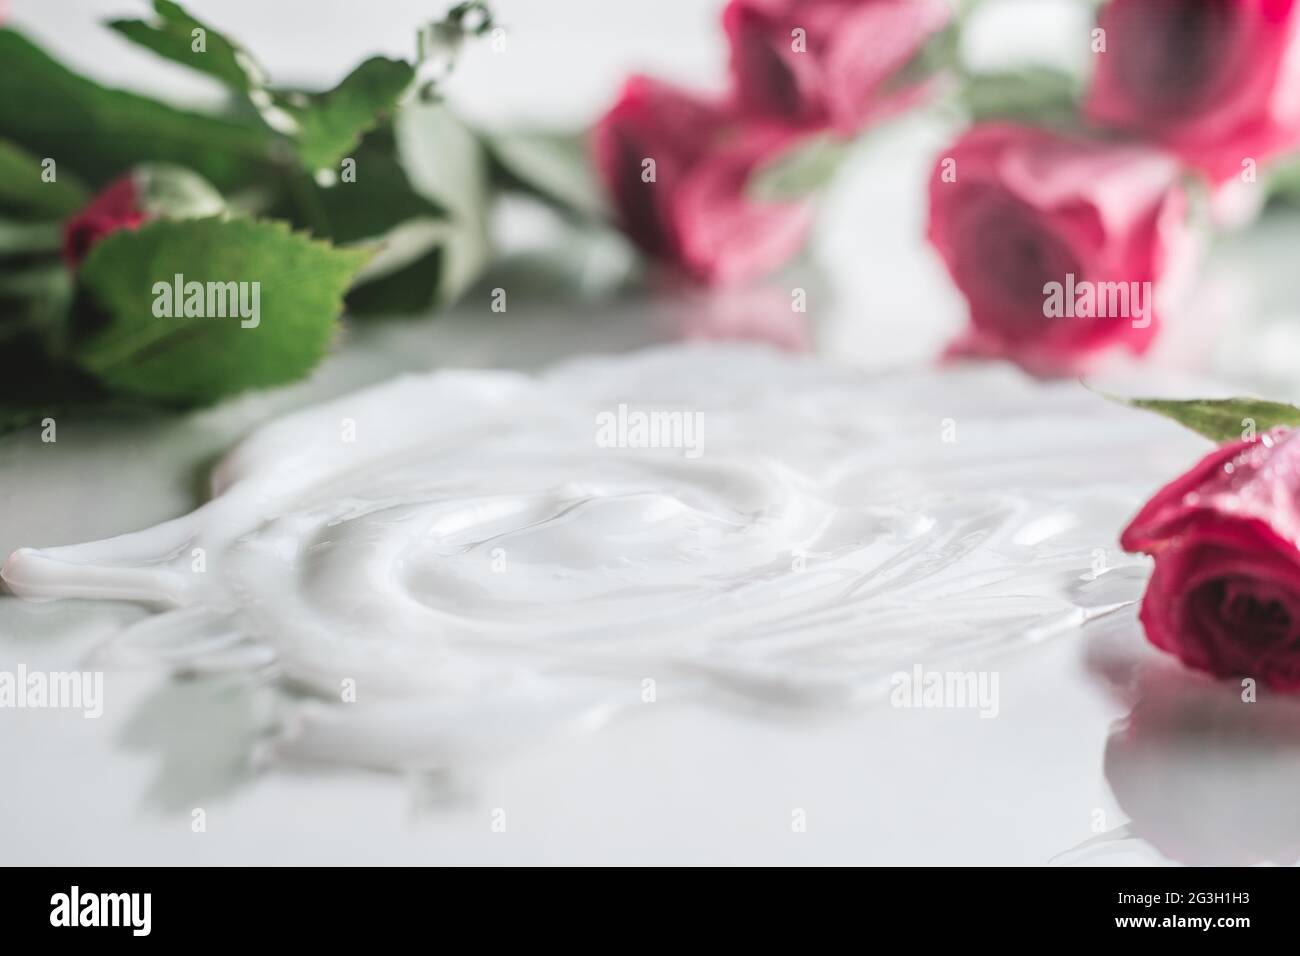 Weiße Creme auf glänzender Oberfläche, umgeben von unscharfen, zarten rosa Rosen Stockfoto